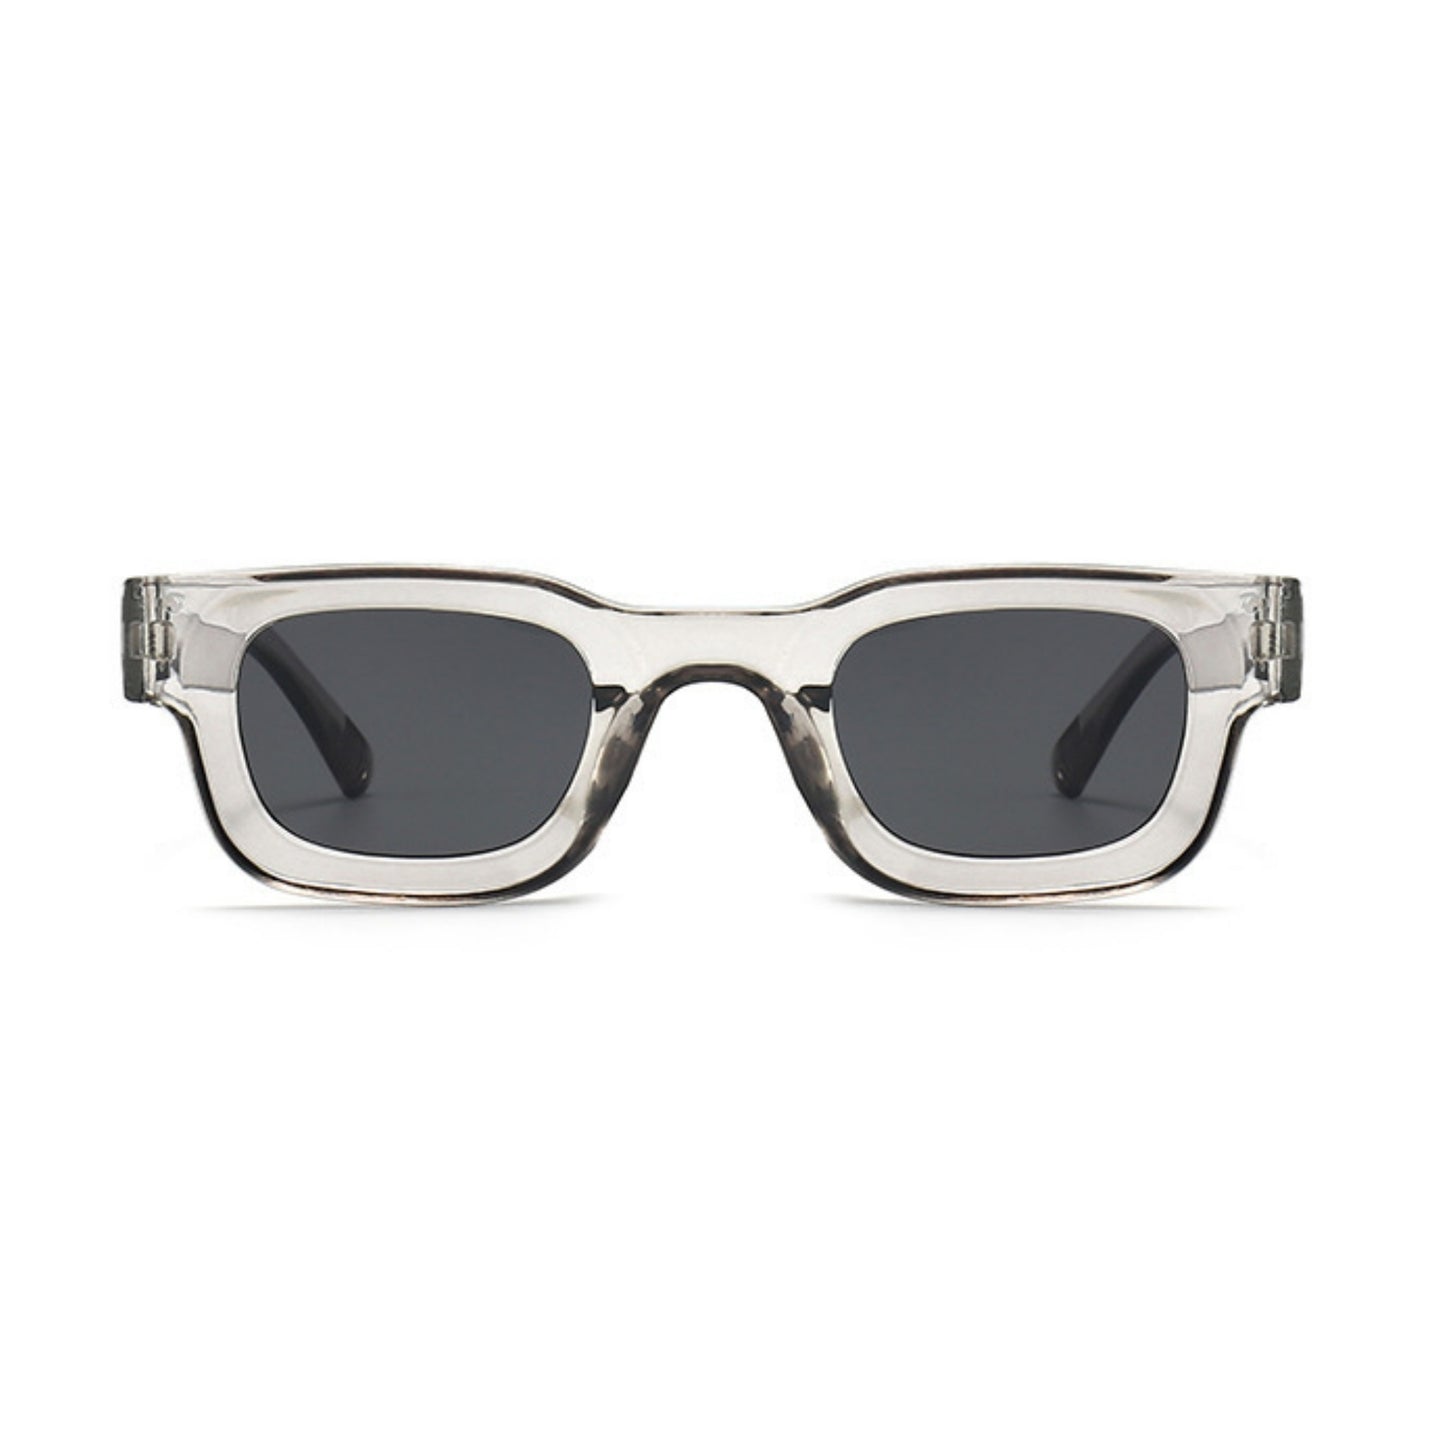 Τετράγωνα Γυαλιά ηλίου Taf από την Exposure Sunglasses με προστασία UV400 με ασημί σκελετό και μαύρο φακό.